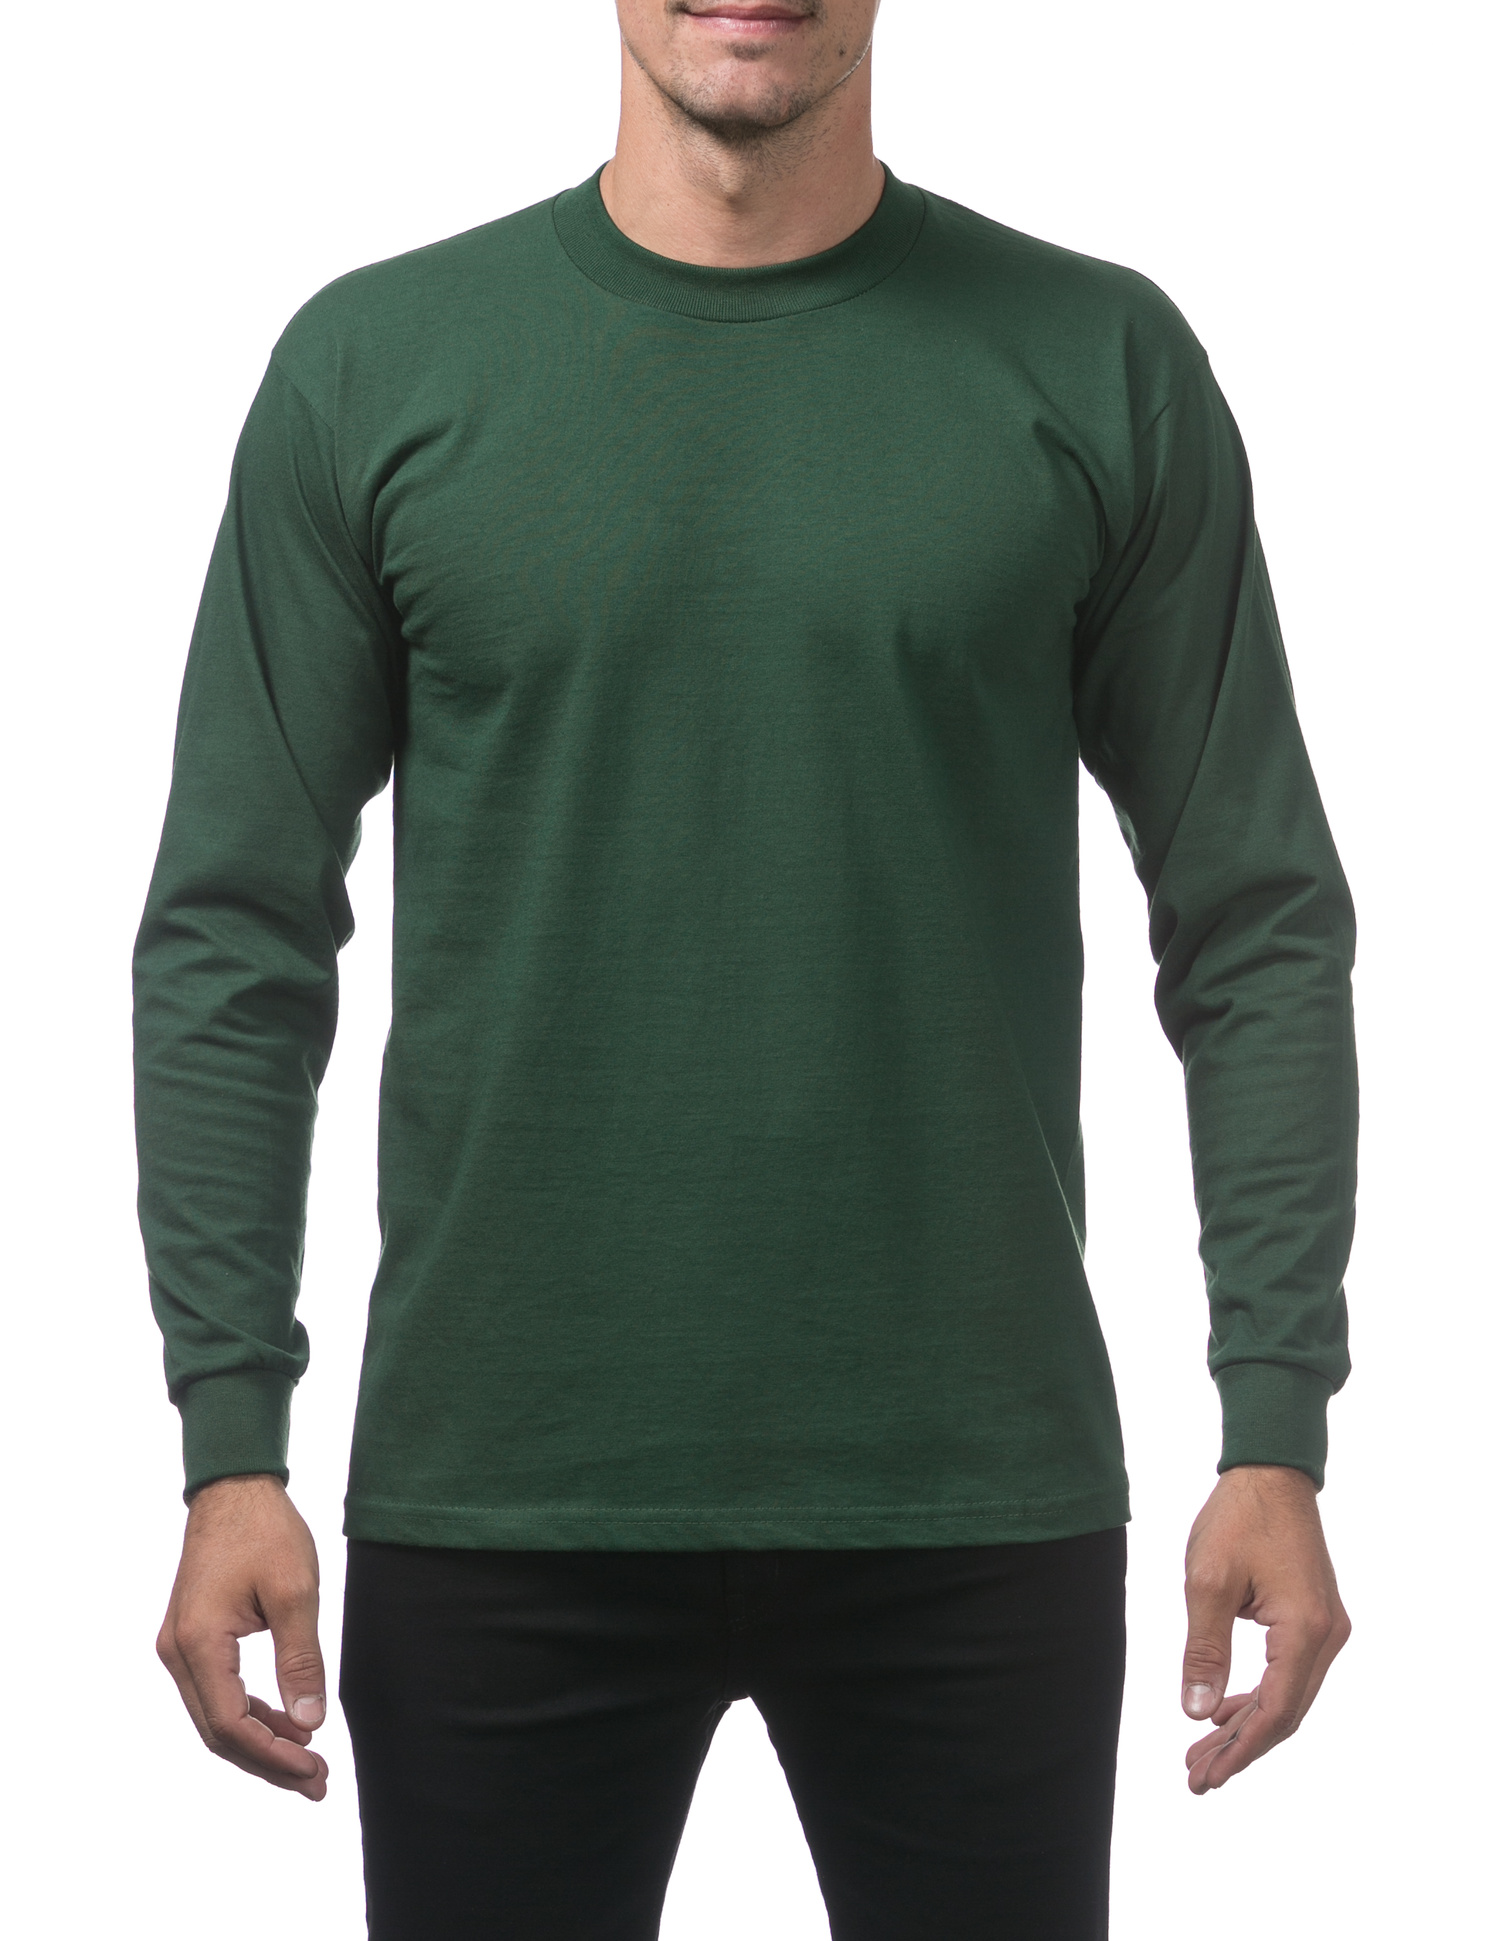 Men's Long Sleeve Deluxe Heavyweight Cotton Shirt